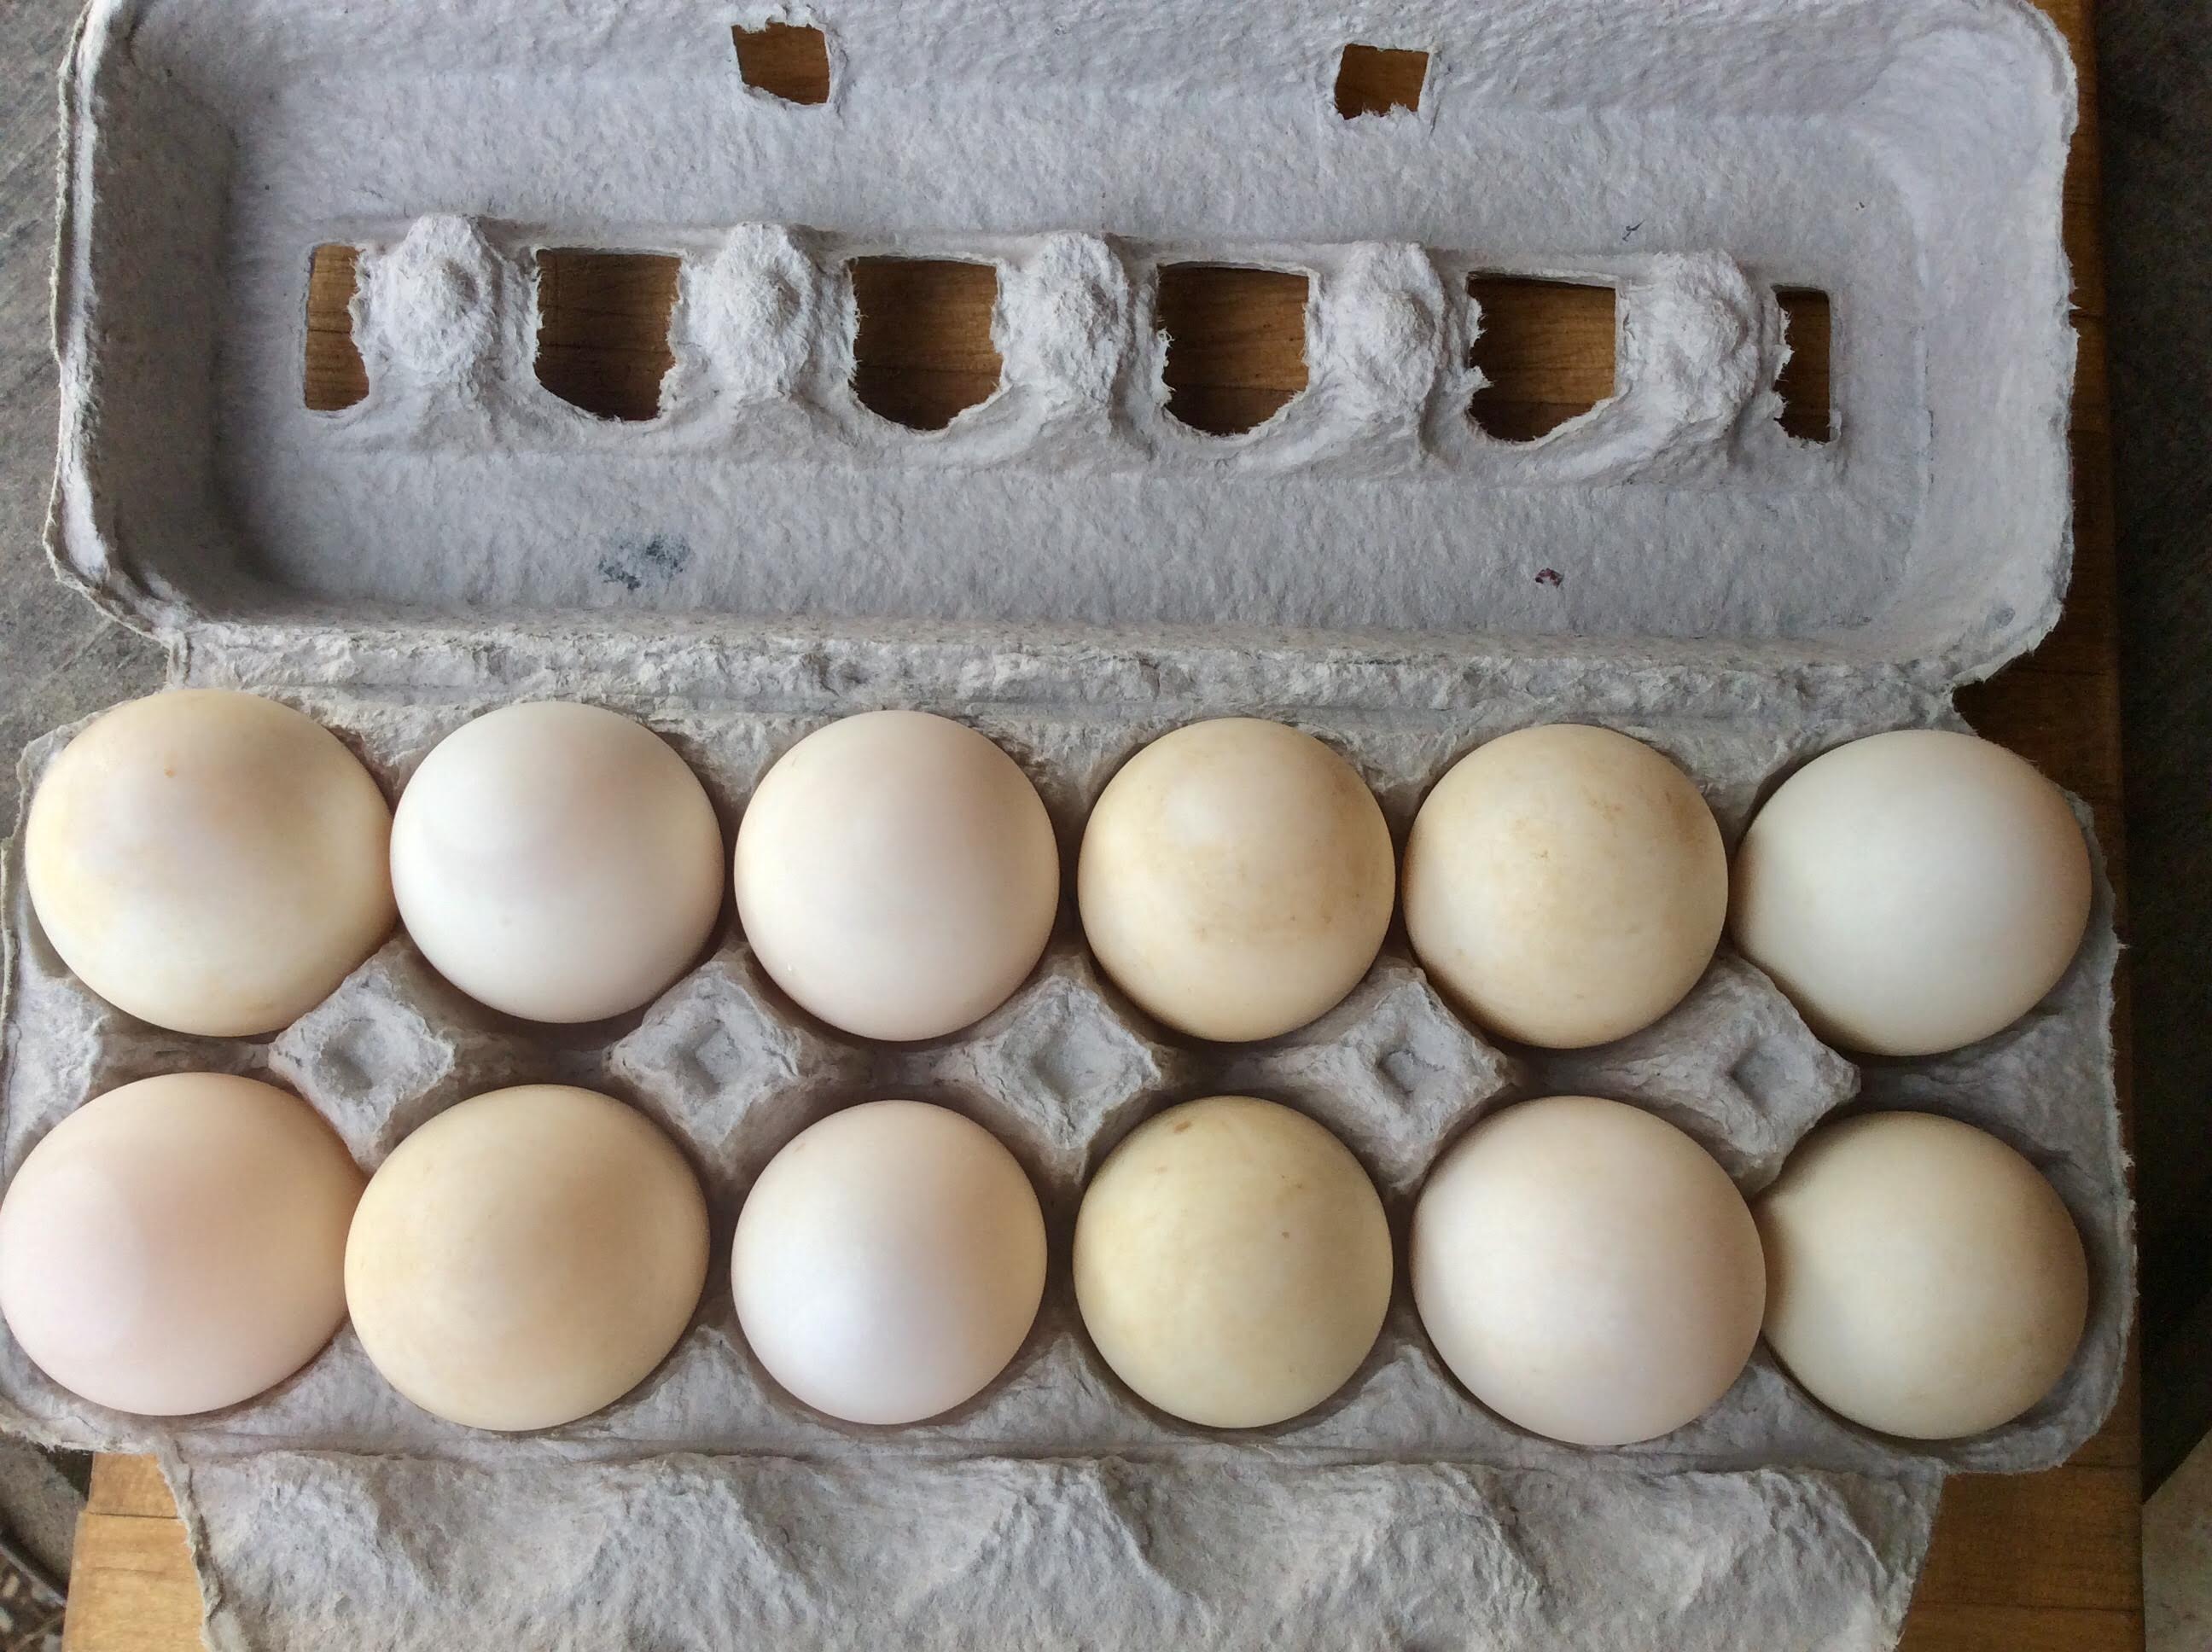 The Egg Carton - 1/2 Dozen Duck Eggs